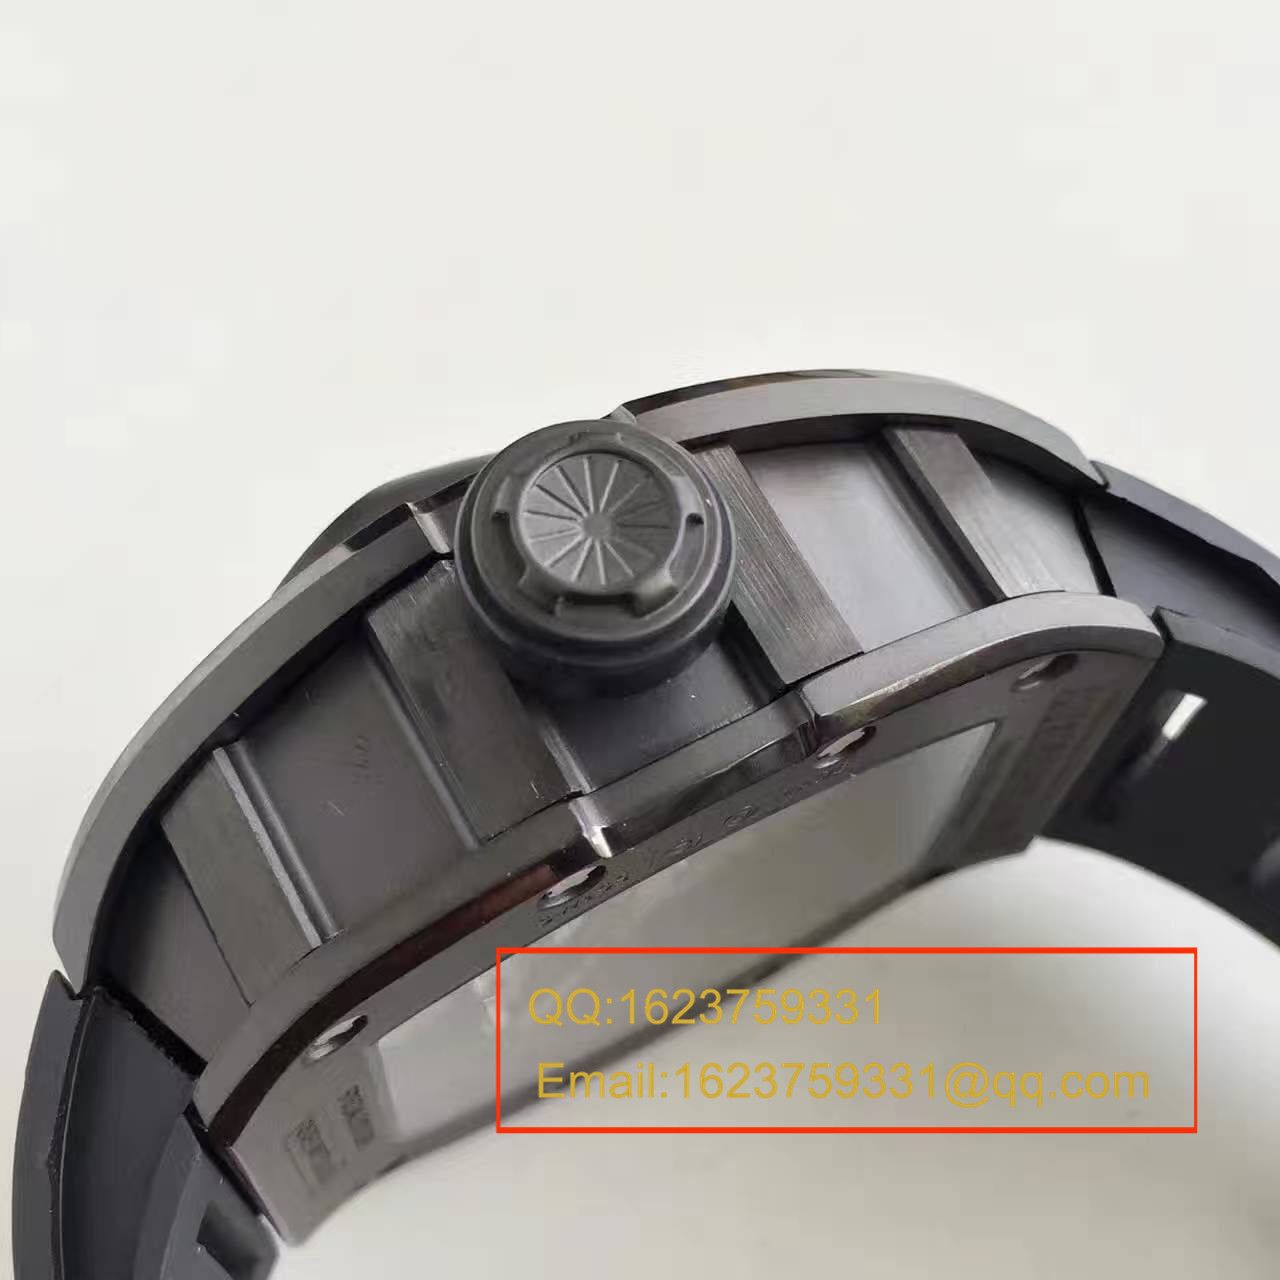 【RM超A精仿手表】里查德米勒男士系列RM 053腕表 / RM033